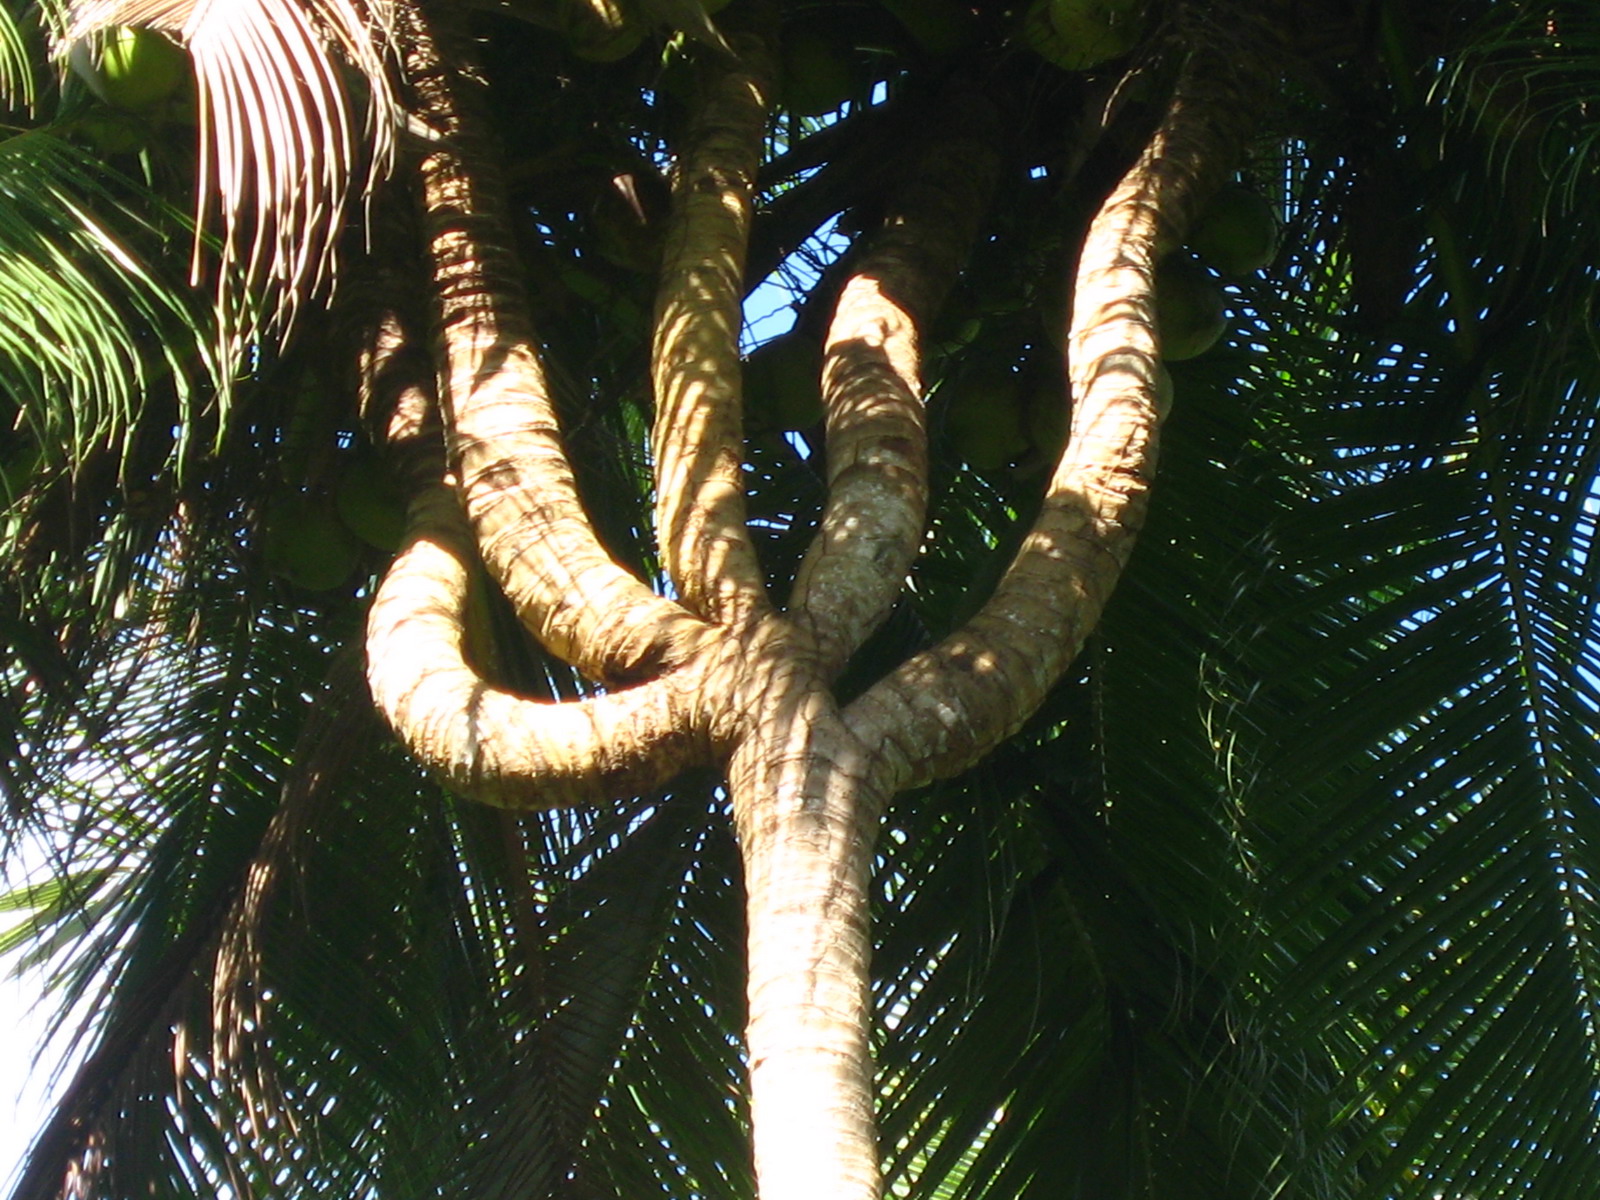 http://1.bp.blogspot.com/-JTTWk0iY7kA/Th_S_hqJa4I/AAAAAAAAF-M/DSySDLt-KRM/s1600/pohon_kelapa_berbentuk_nama_allah_1.jpg